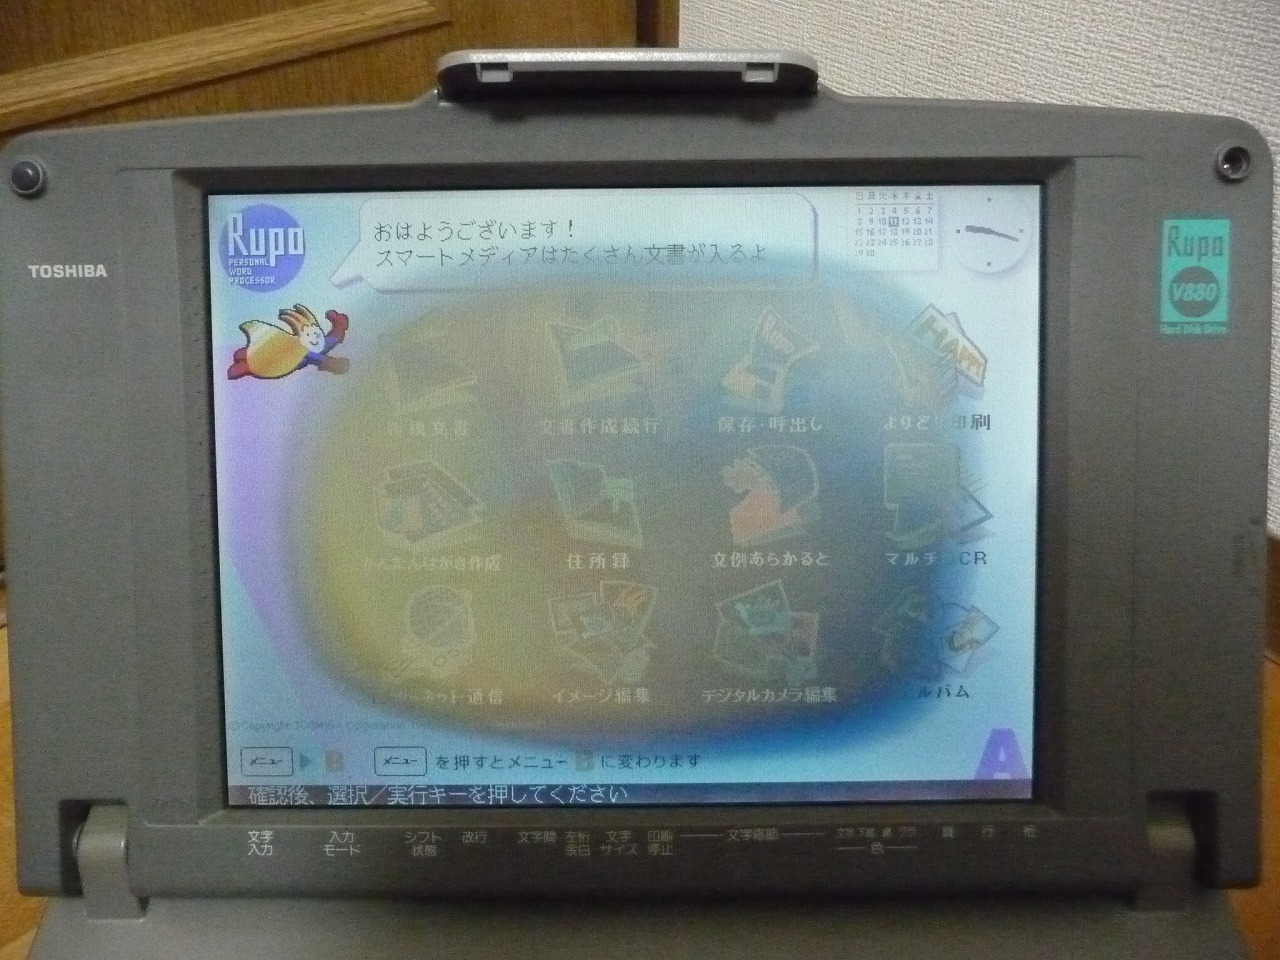 ワープロ TOSHIBA Rupo JW-V880 東芝 ルポ 12.1型 カラー液晶 HDD 360MB ハードディスク内蔵 フロッピー